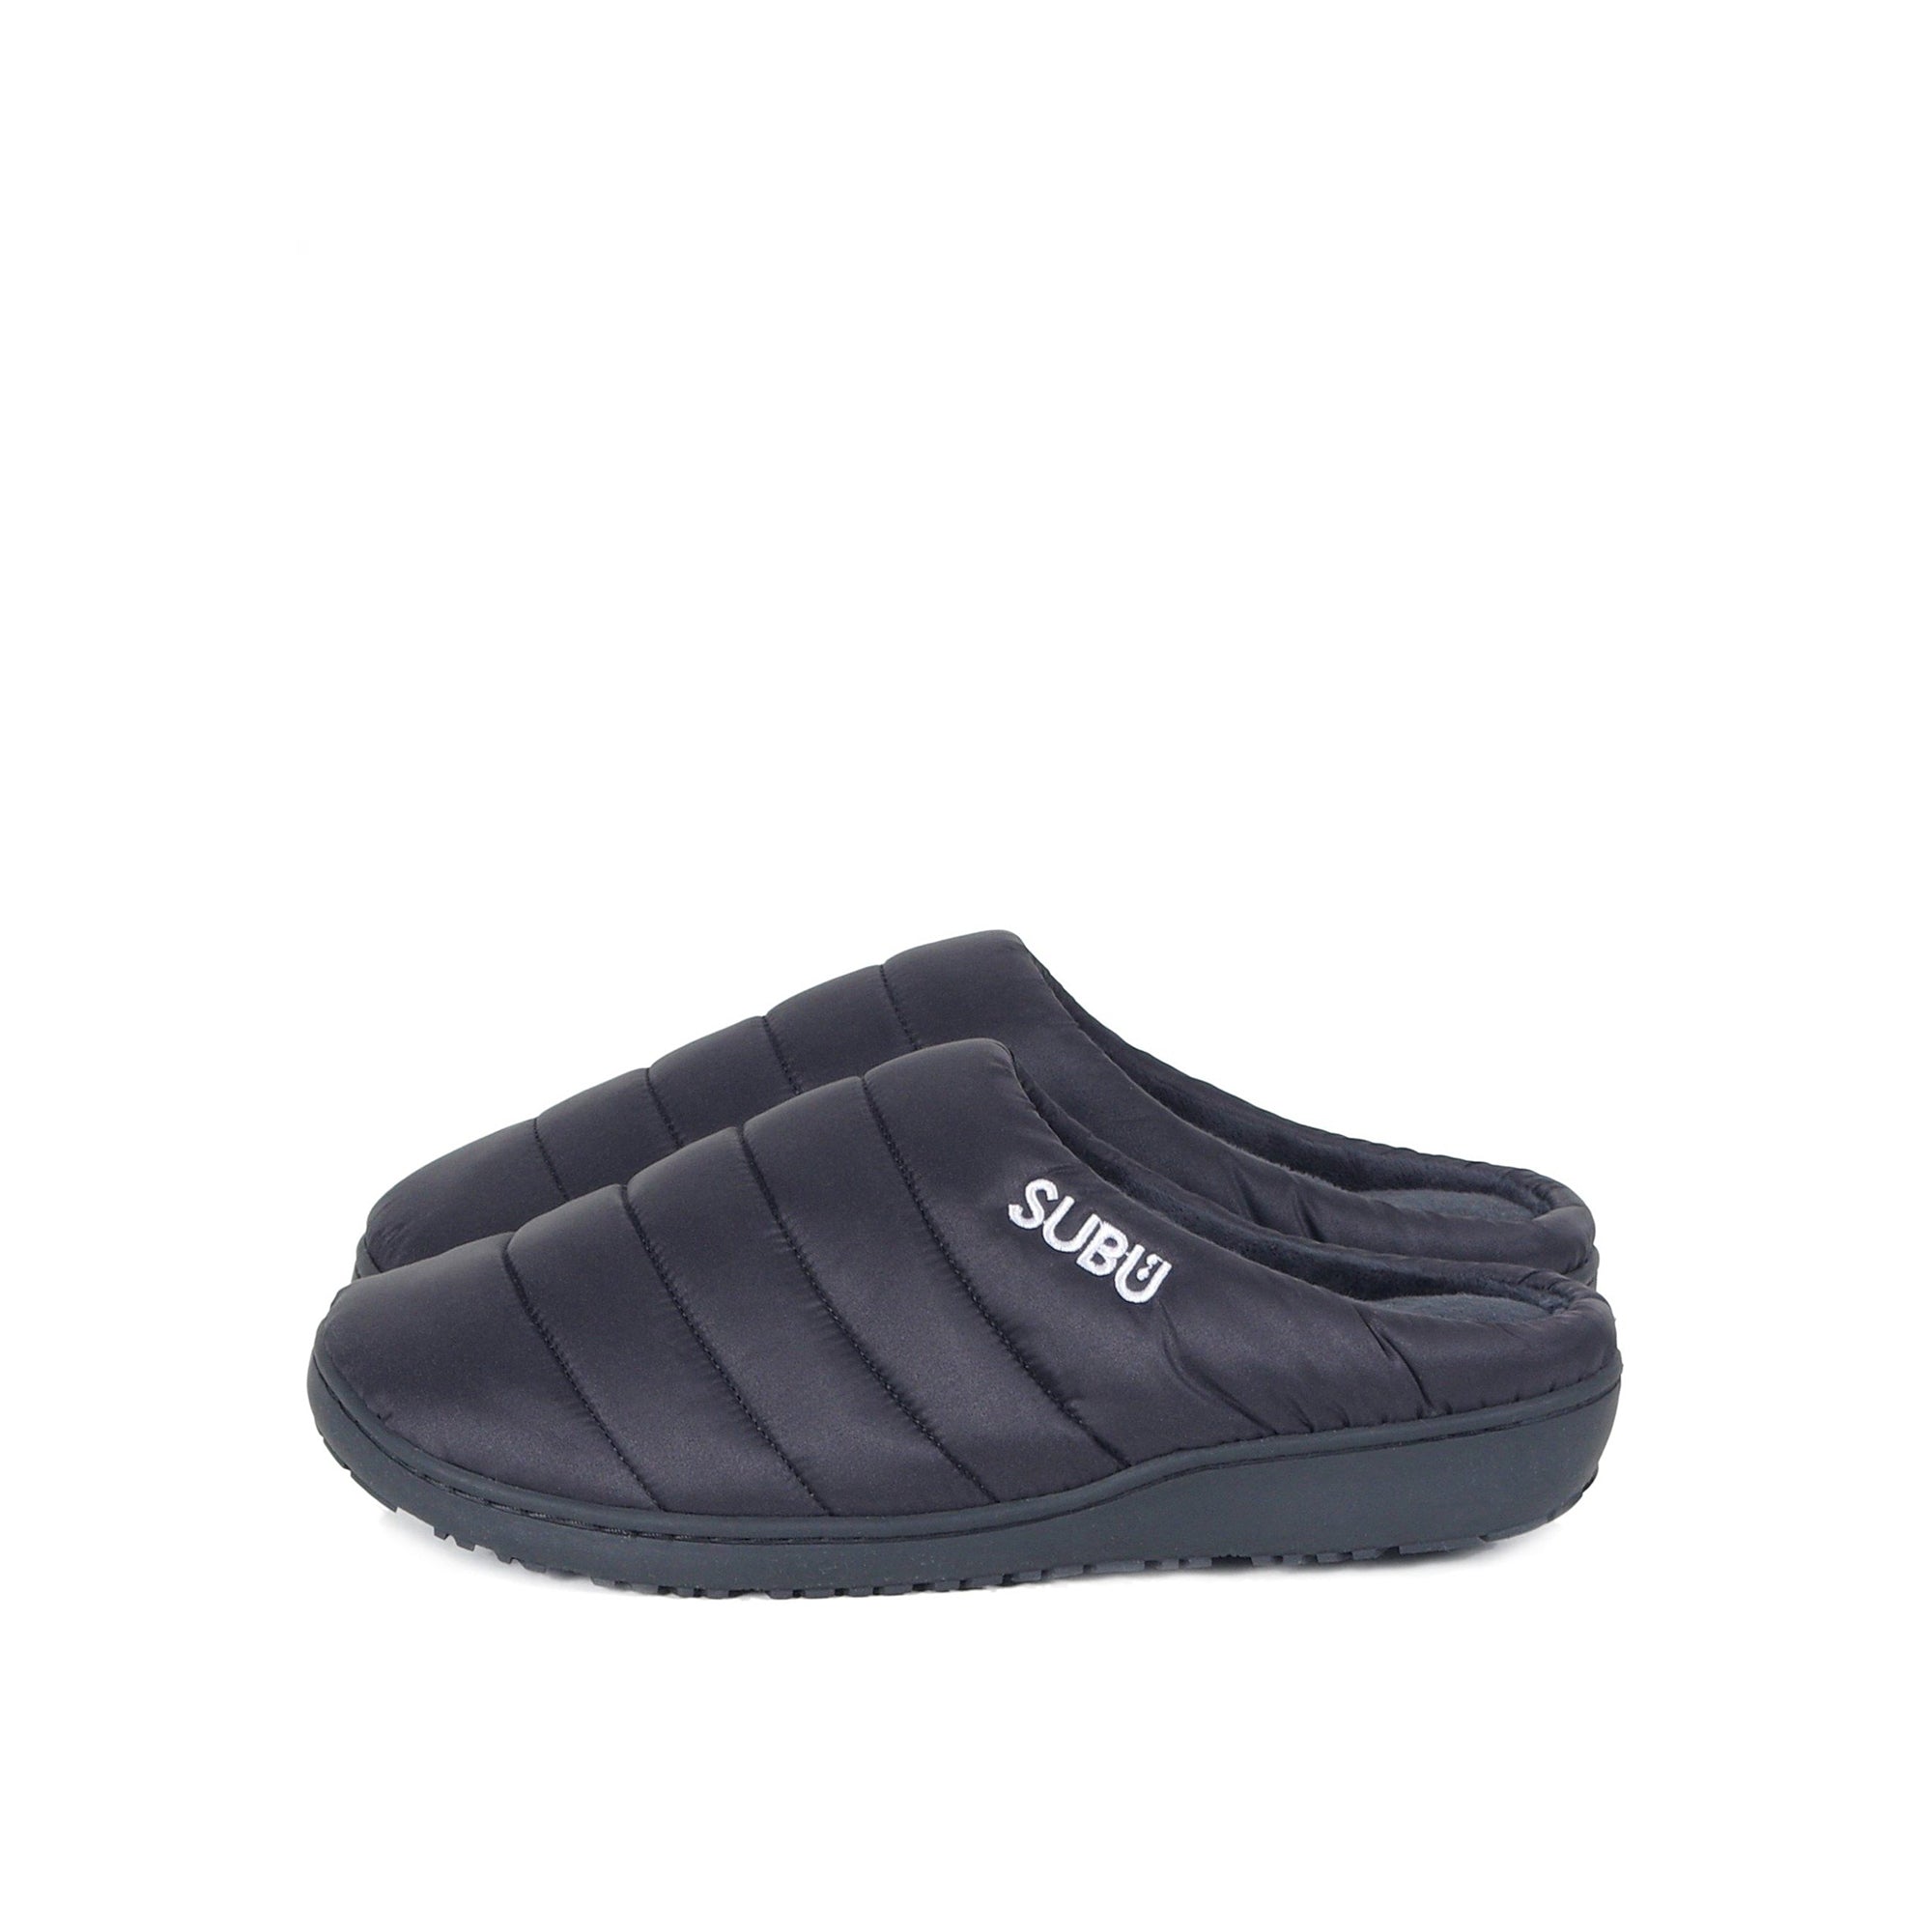 Subu Indoor/Outdoor Slippers - Black